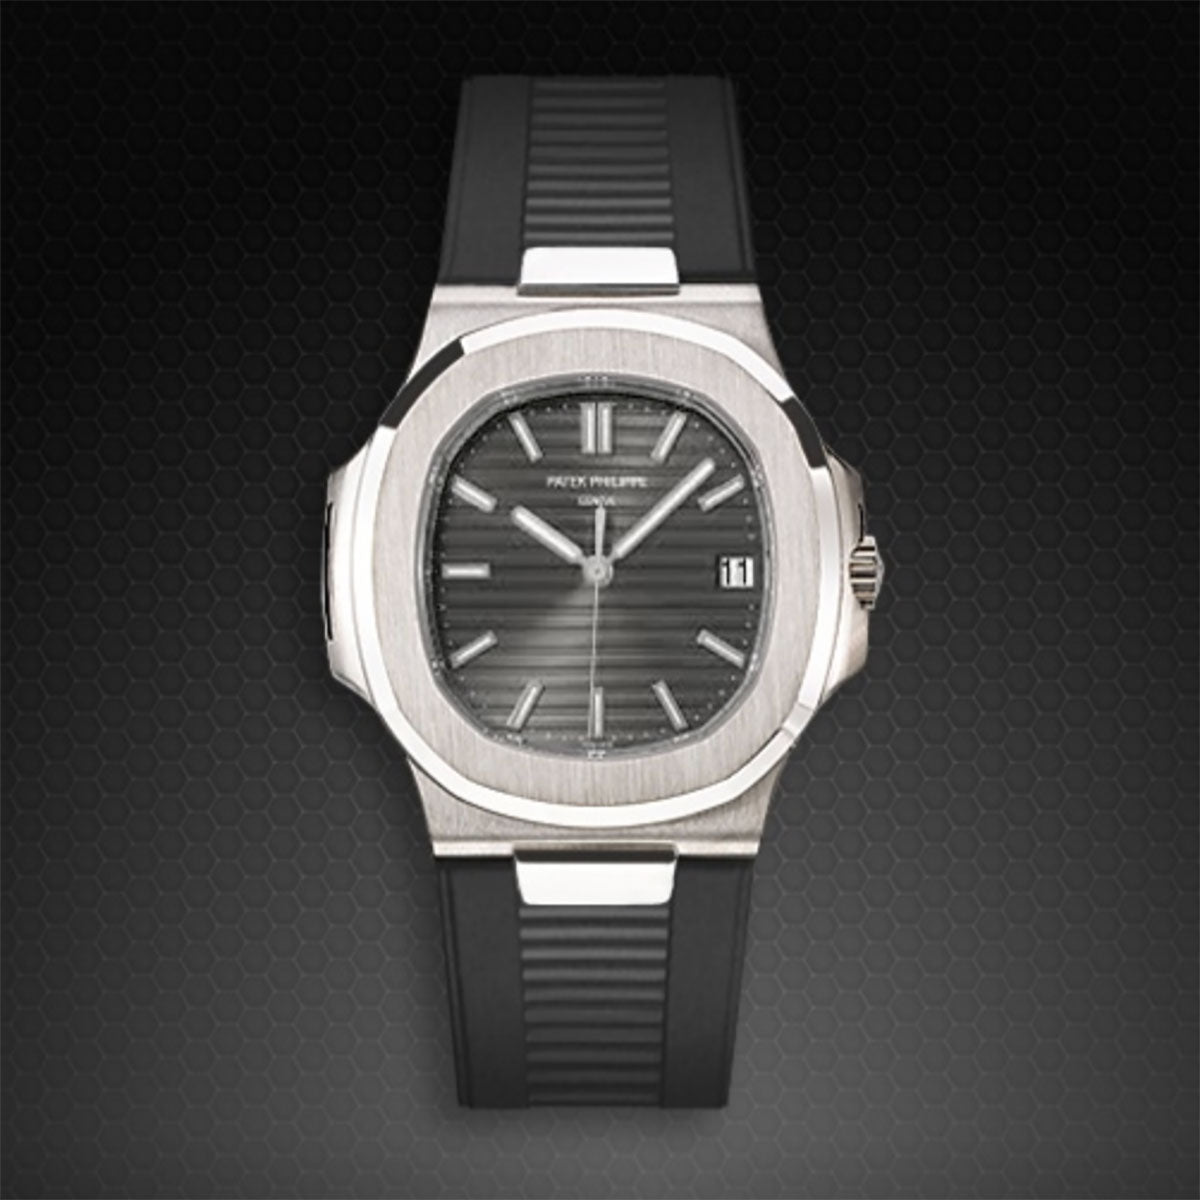 Patek Philippe - Rubber B - Bracelet caoutchouc pour Nautilus 5711 WG / RG / YG - watch band leather strap - ABP Concept -